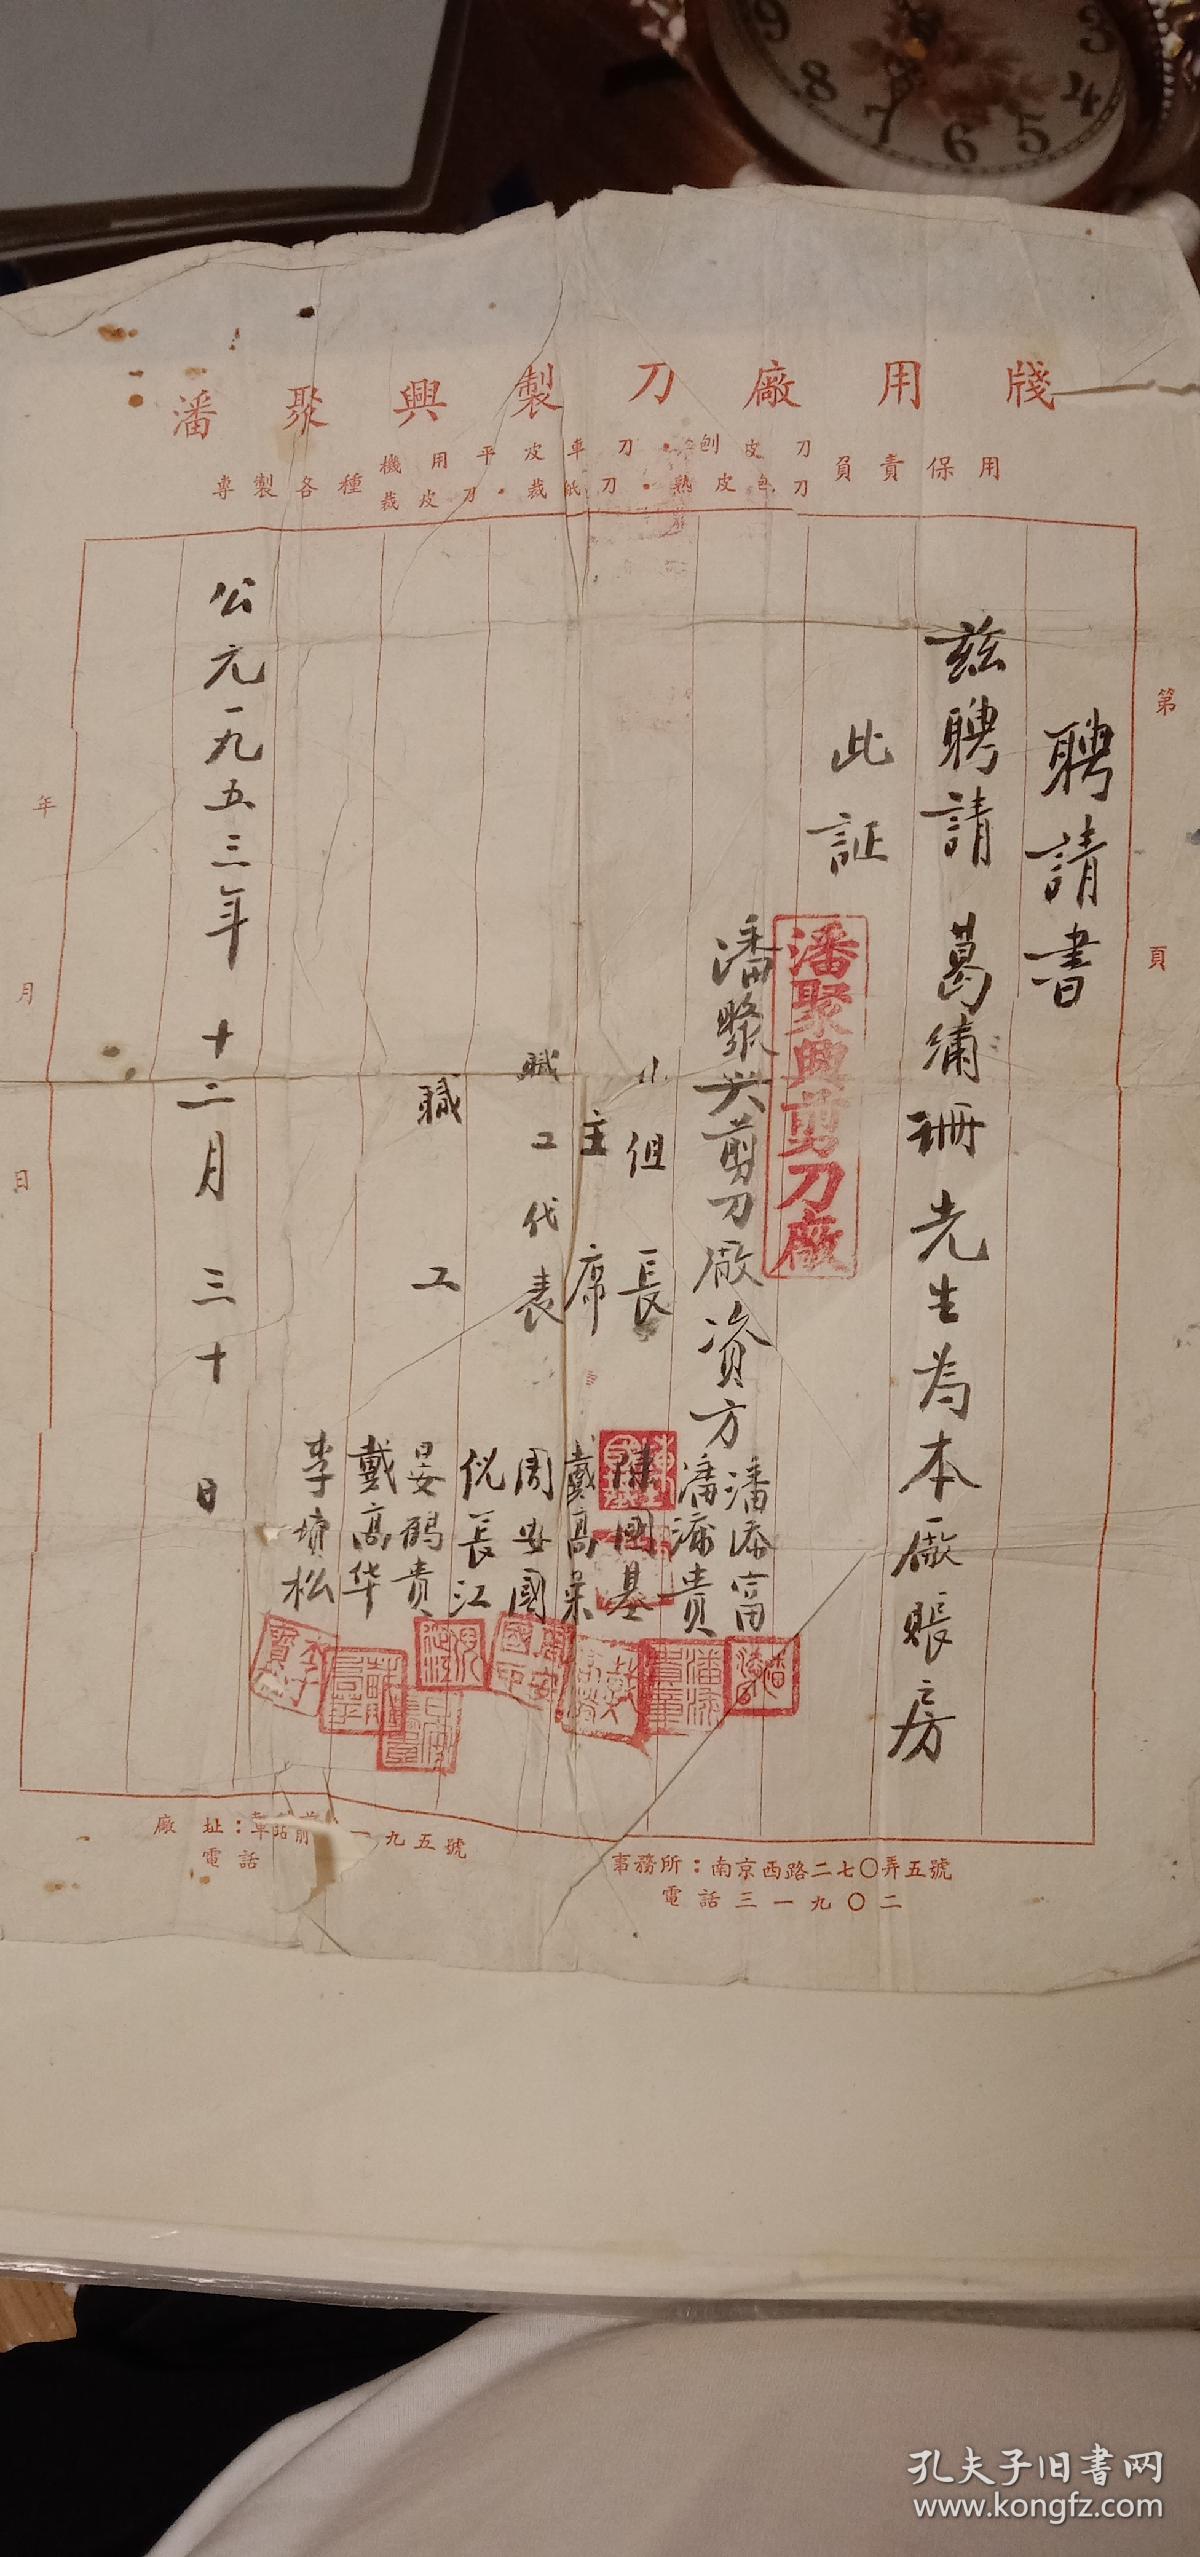 1953年南京西路潘聚兴制刀厂聘请的账房先生聘请书证明，历史的记载。网上没找到资料。